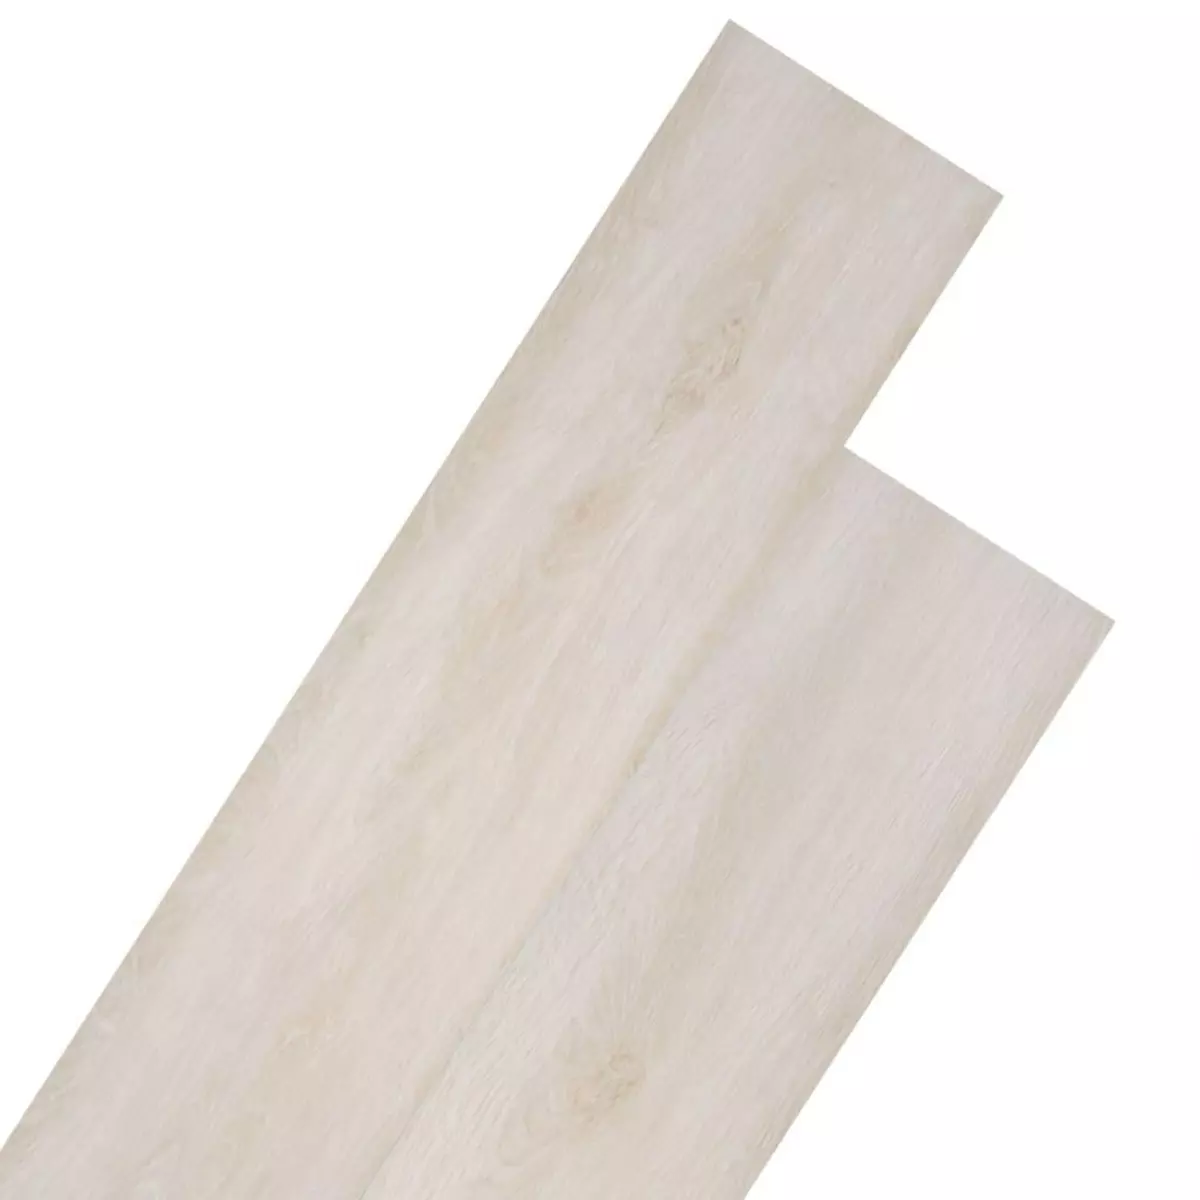 VIDAXL Planches de plancher PVC Non auto-adhesif Chene blanc classique